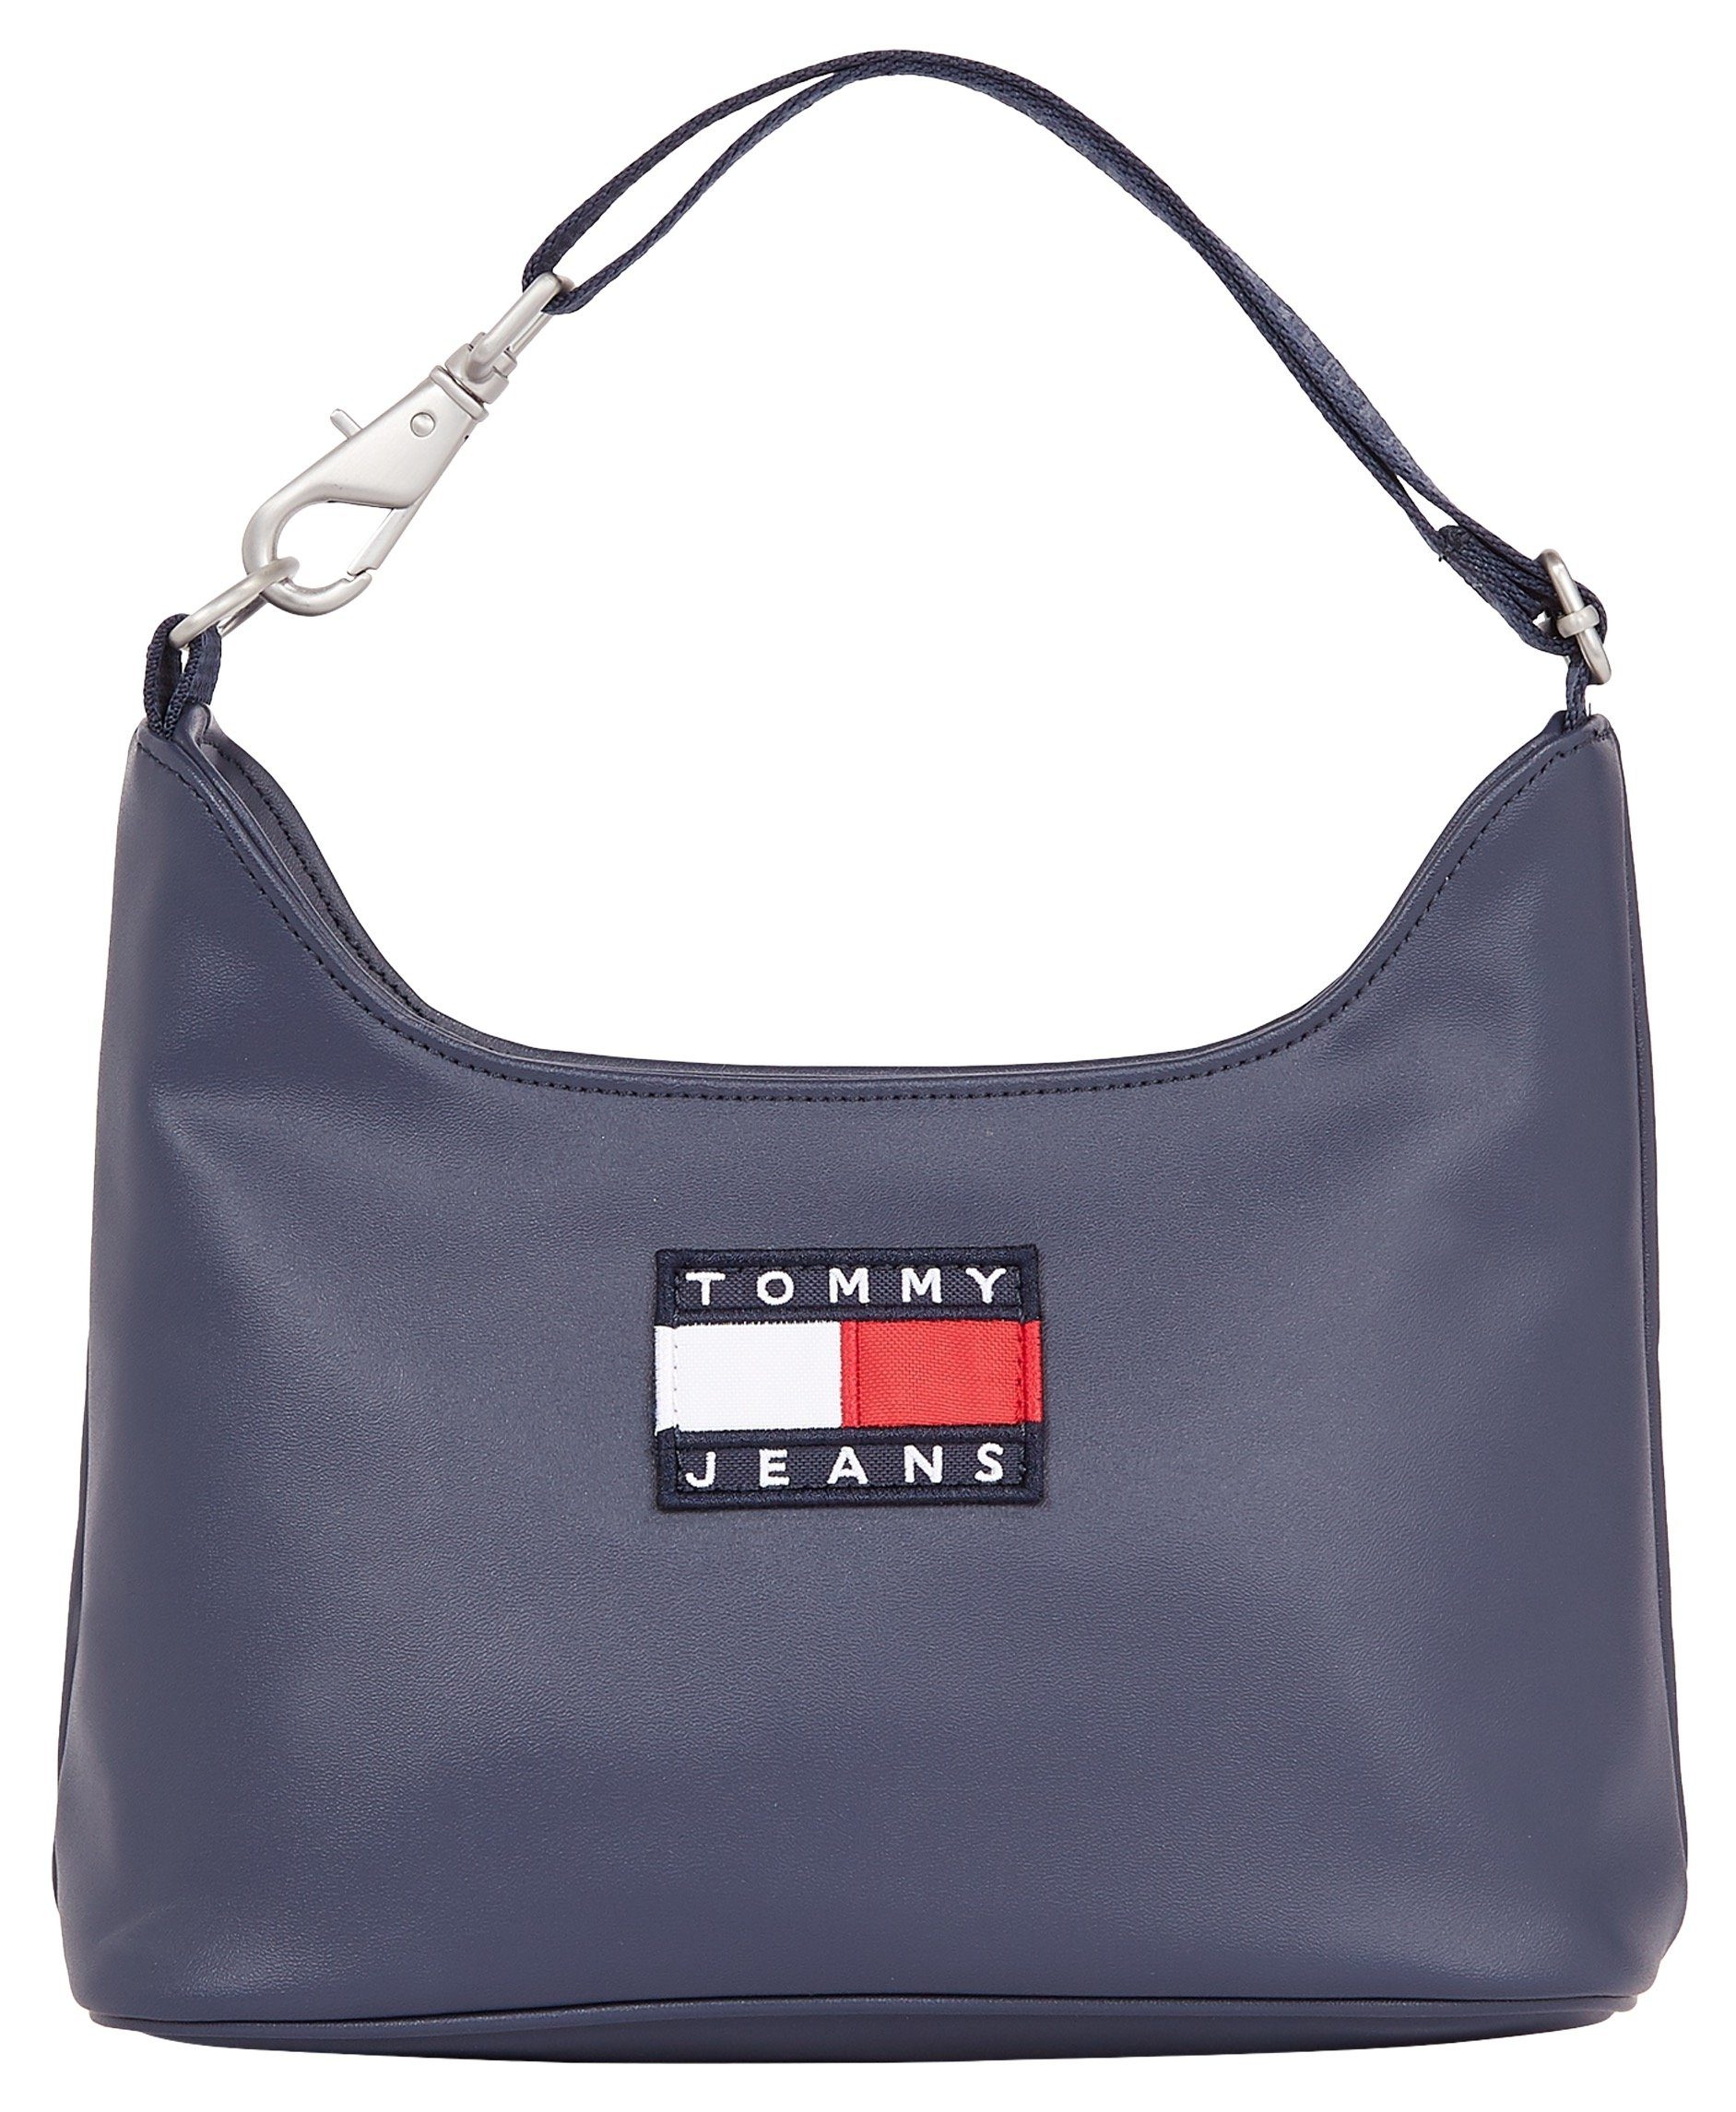 Tommy Hilfiger Handtaschen online kaufen | OTTO